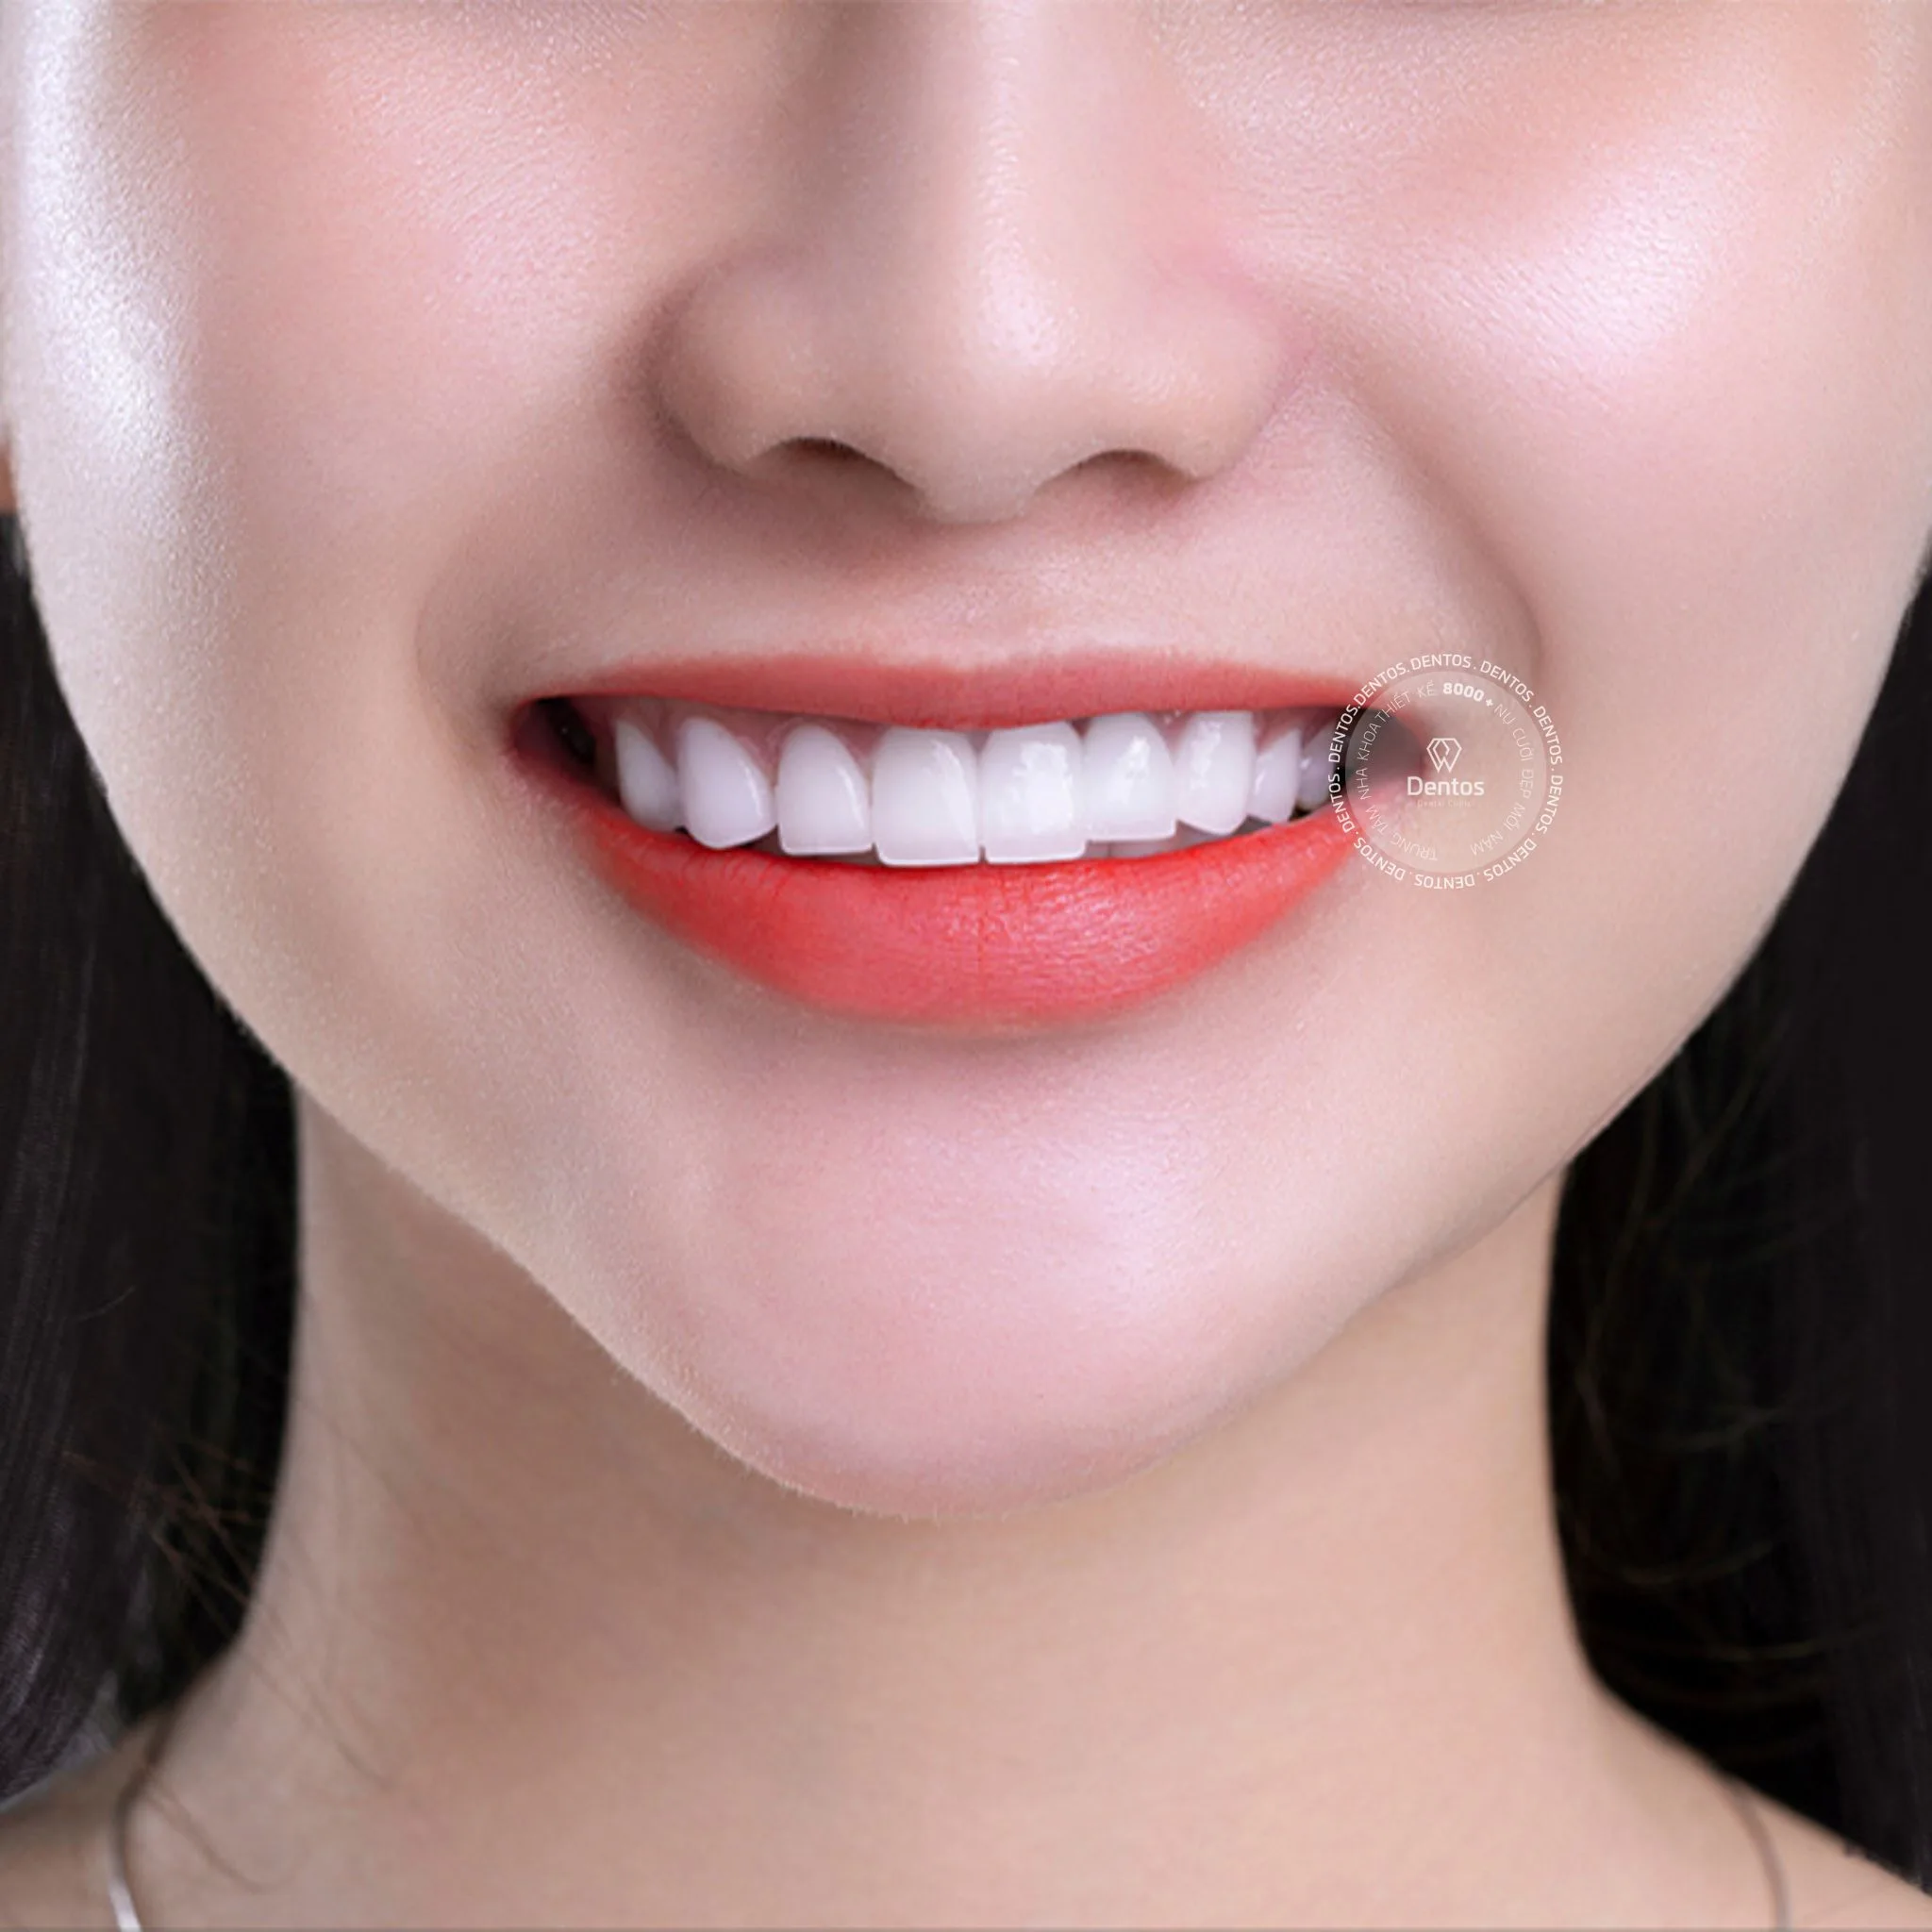 Răng toàn sứ Zirconia có màu sắc tự nhiên, giống với răng thật